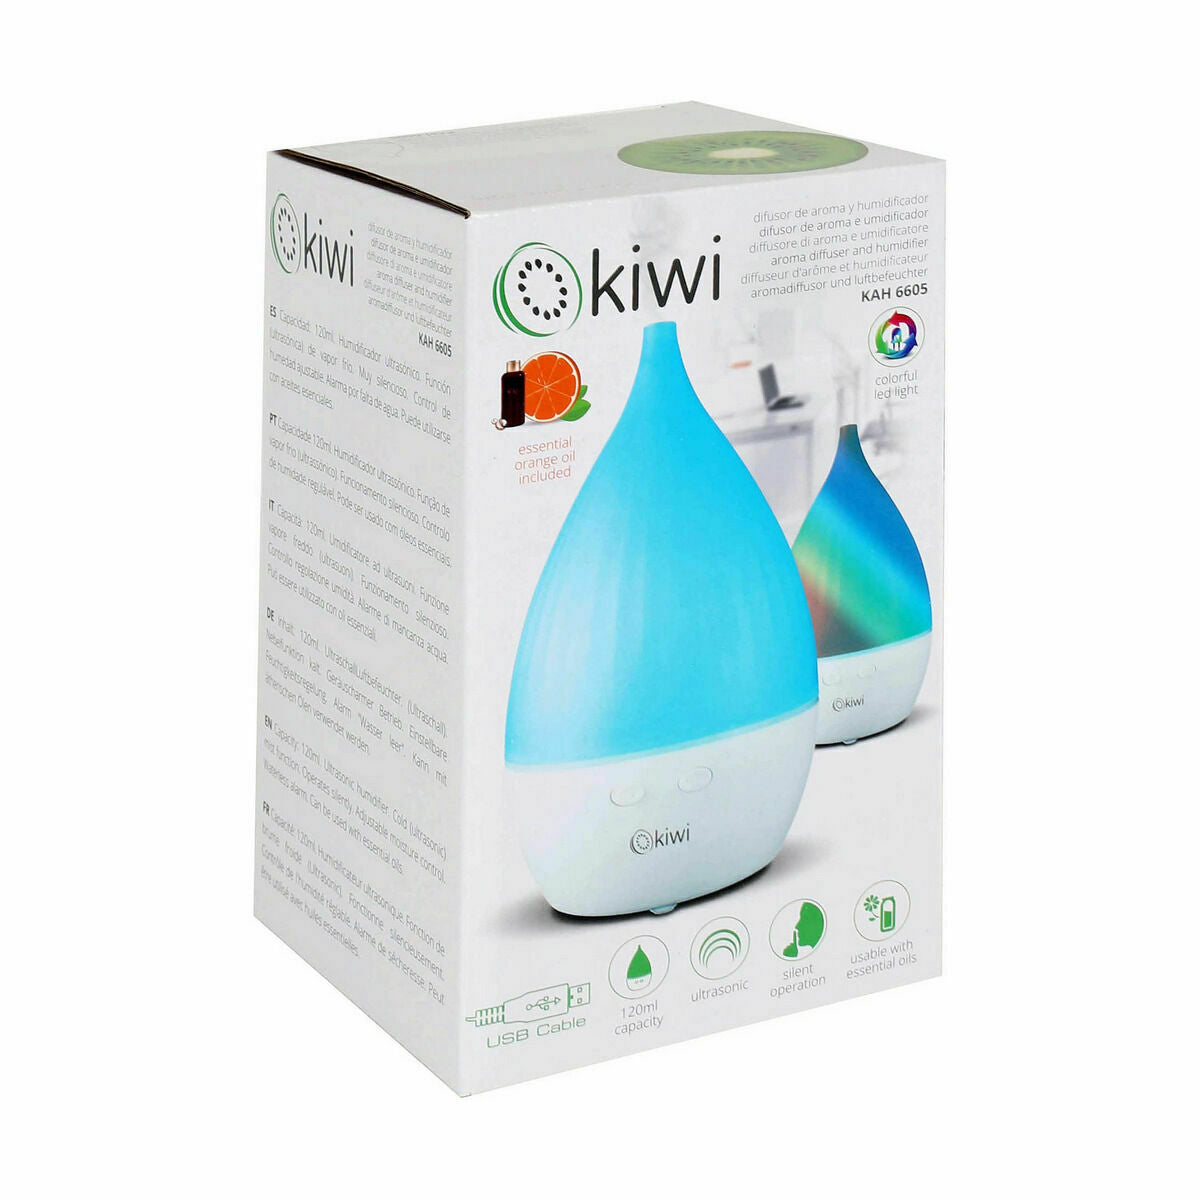 Kaufe Diffusor für ätherische Öle Kiwi Luftbefeuchter 120 ml (4 Stück) bei AWK Flagship um € 52.00